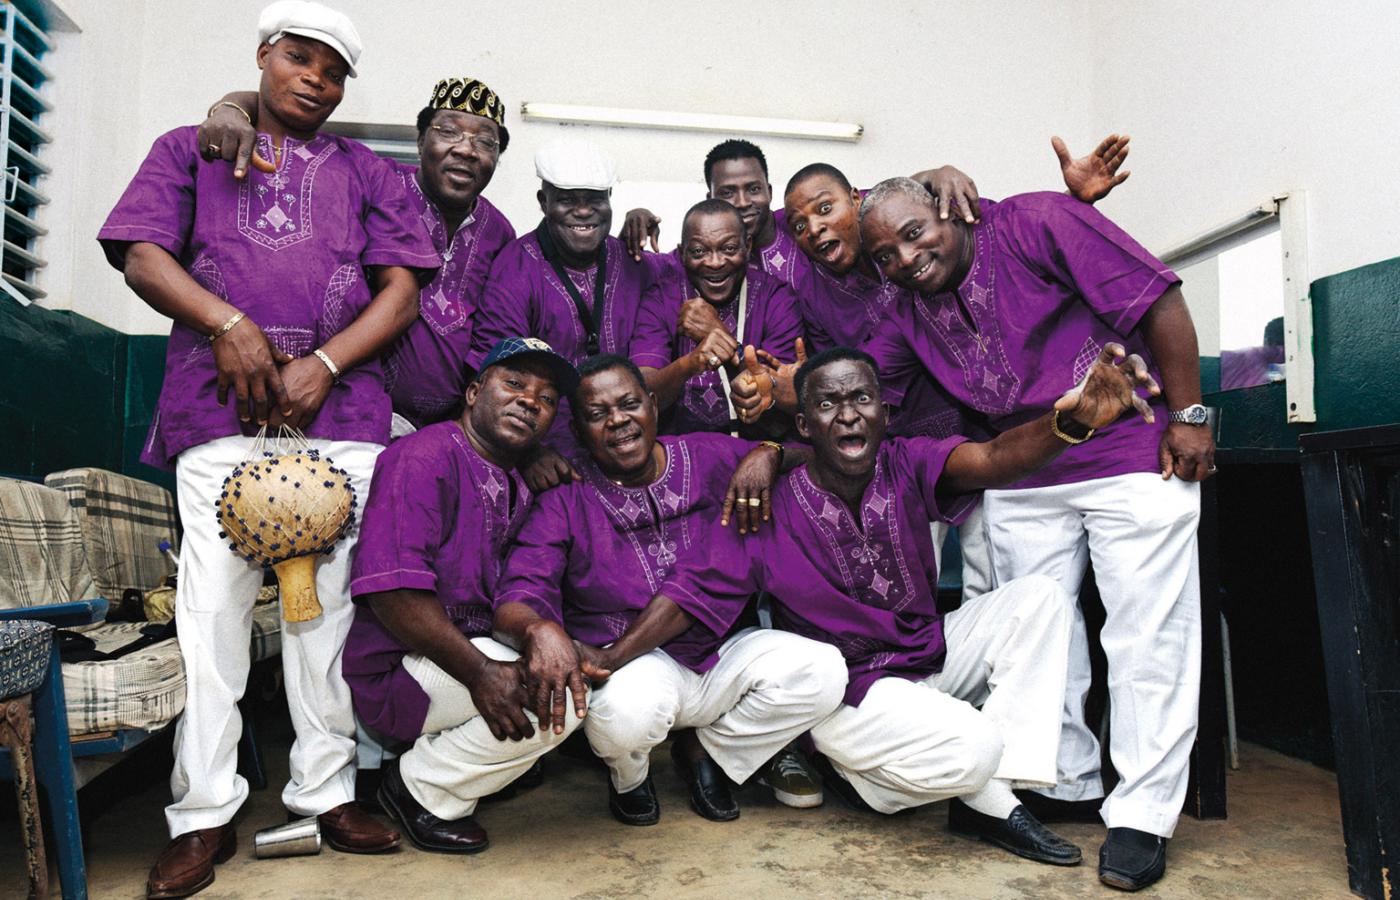 Orchestre Poly-Rythmo de Cotonou przyjeżdża z Afryki na najważniejsze festiwale muzyki alternatywnej, w tym roku na Off Festival.